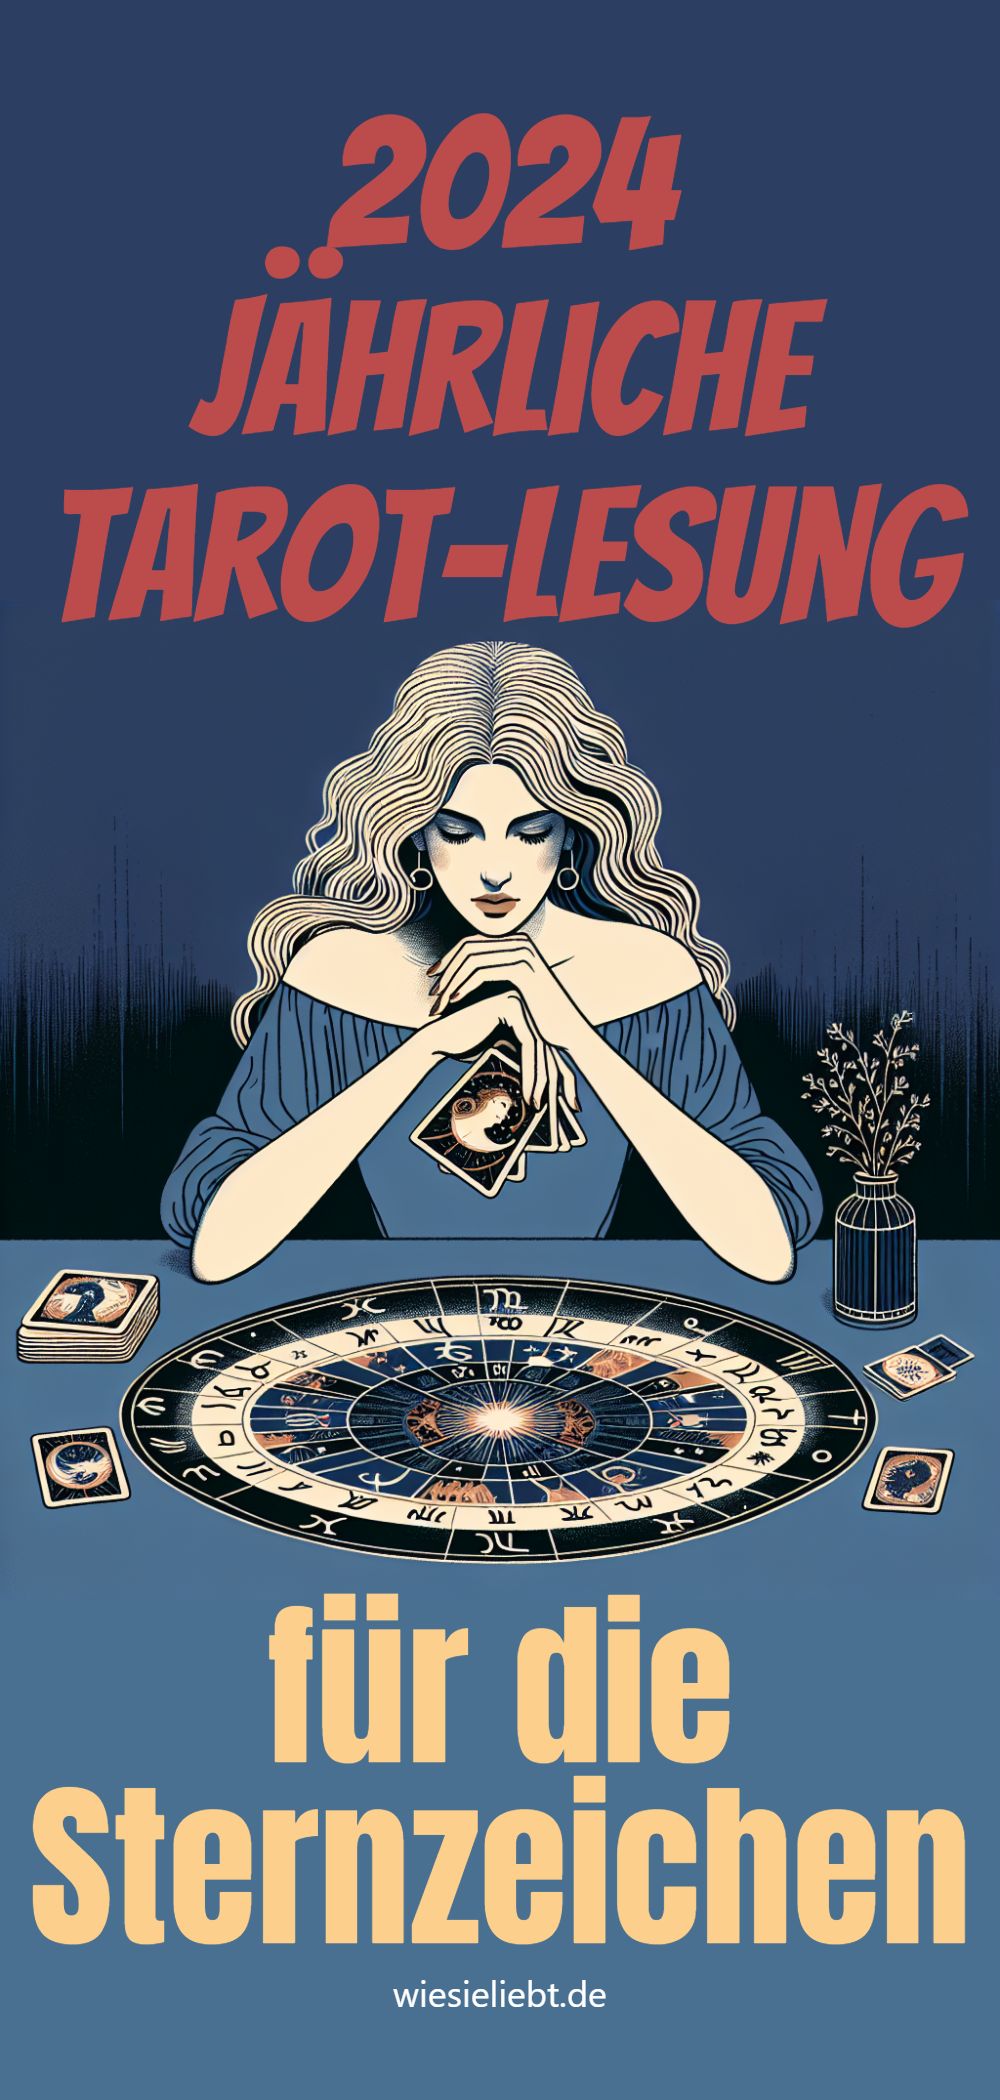 2024 Jährliche Tarot-Lesung für die Sternzeichen